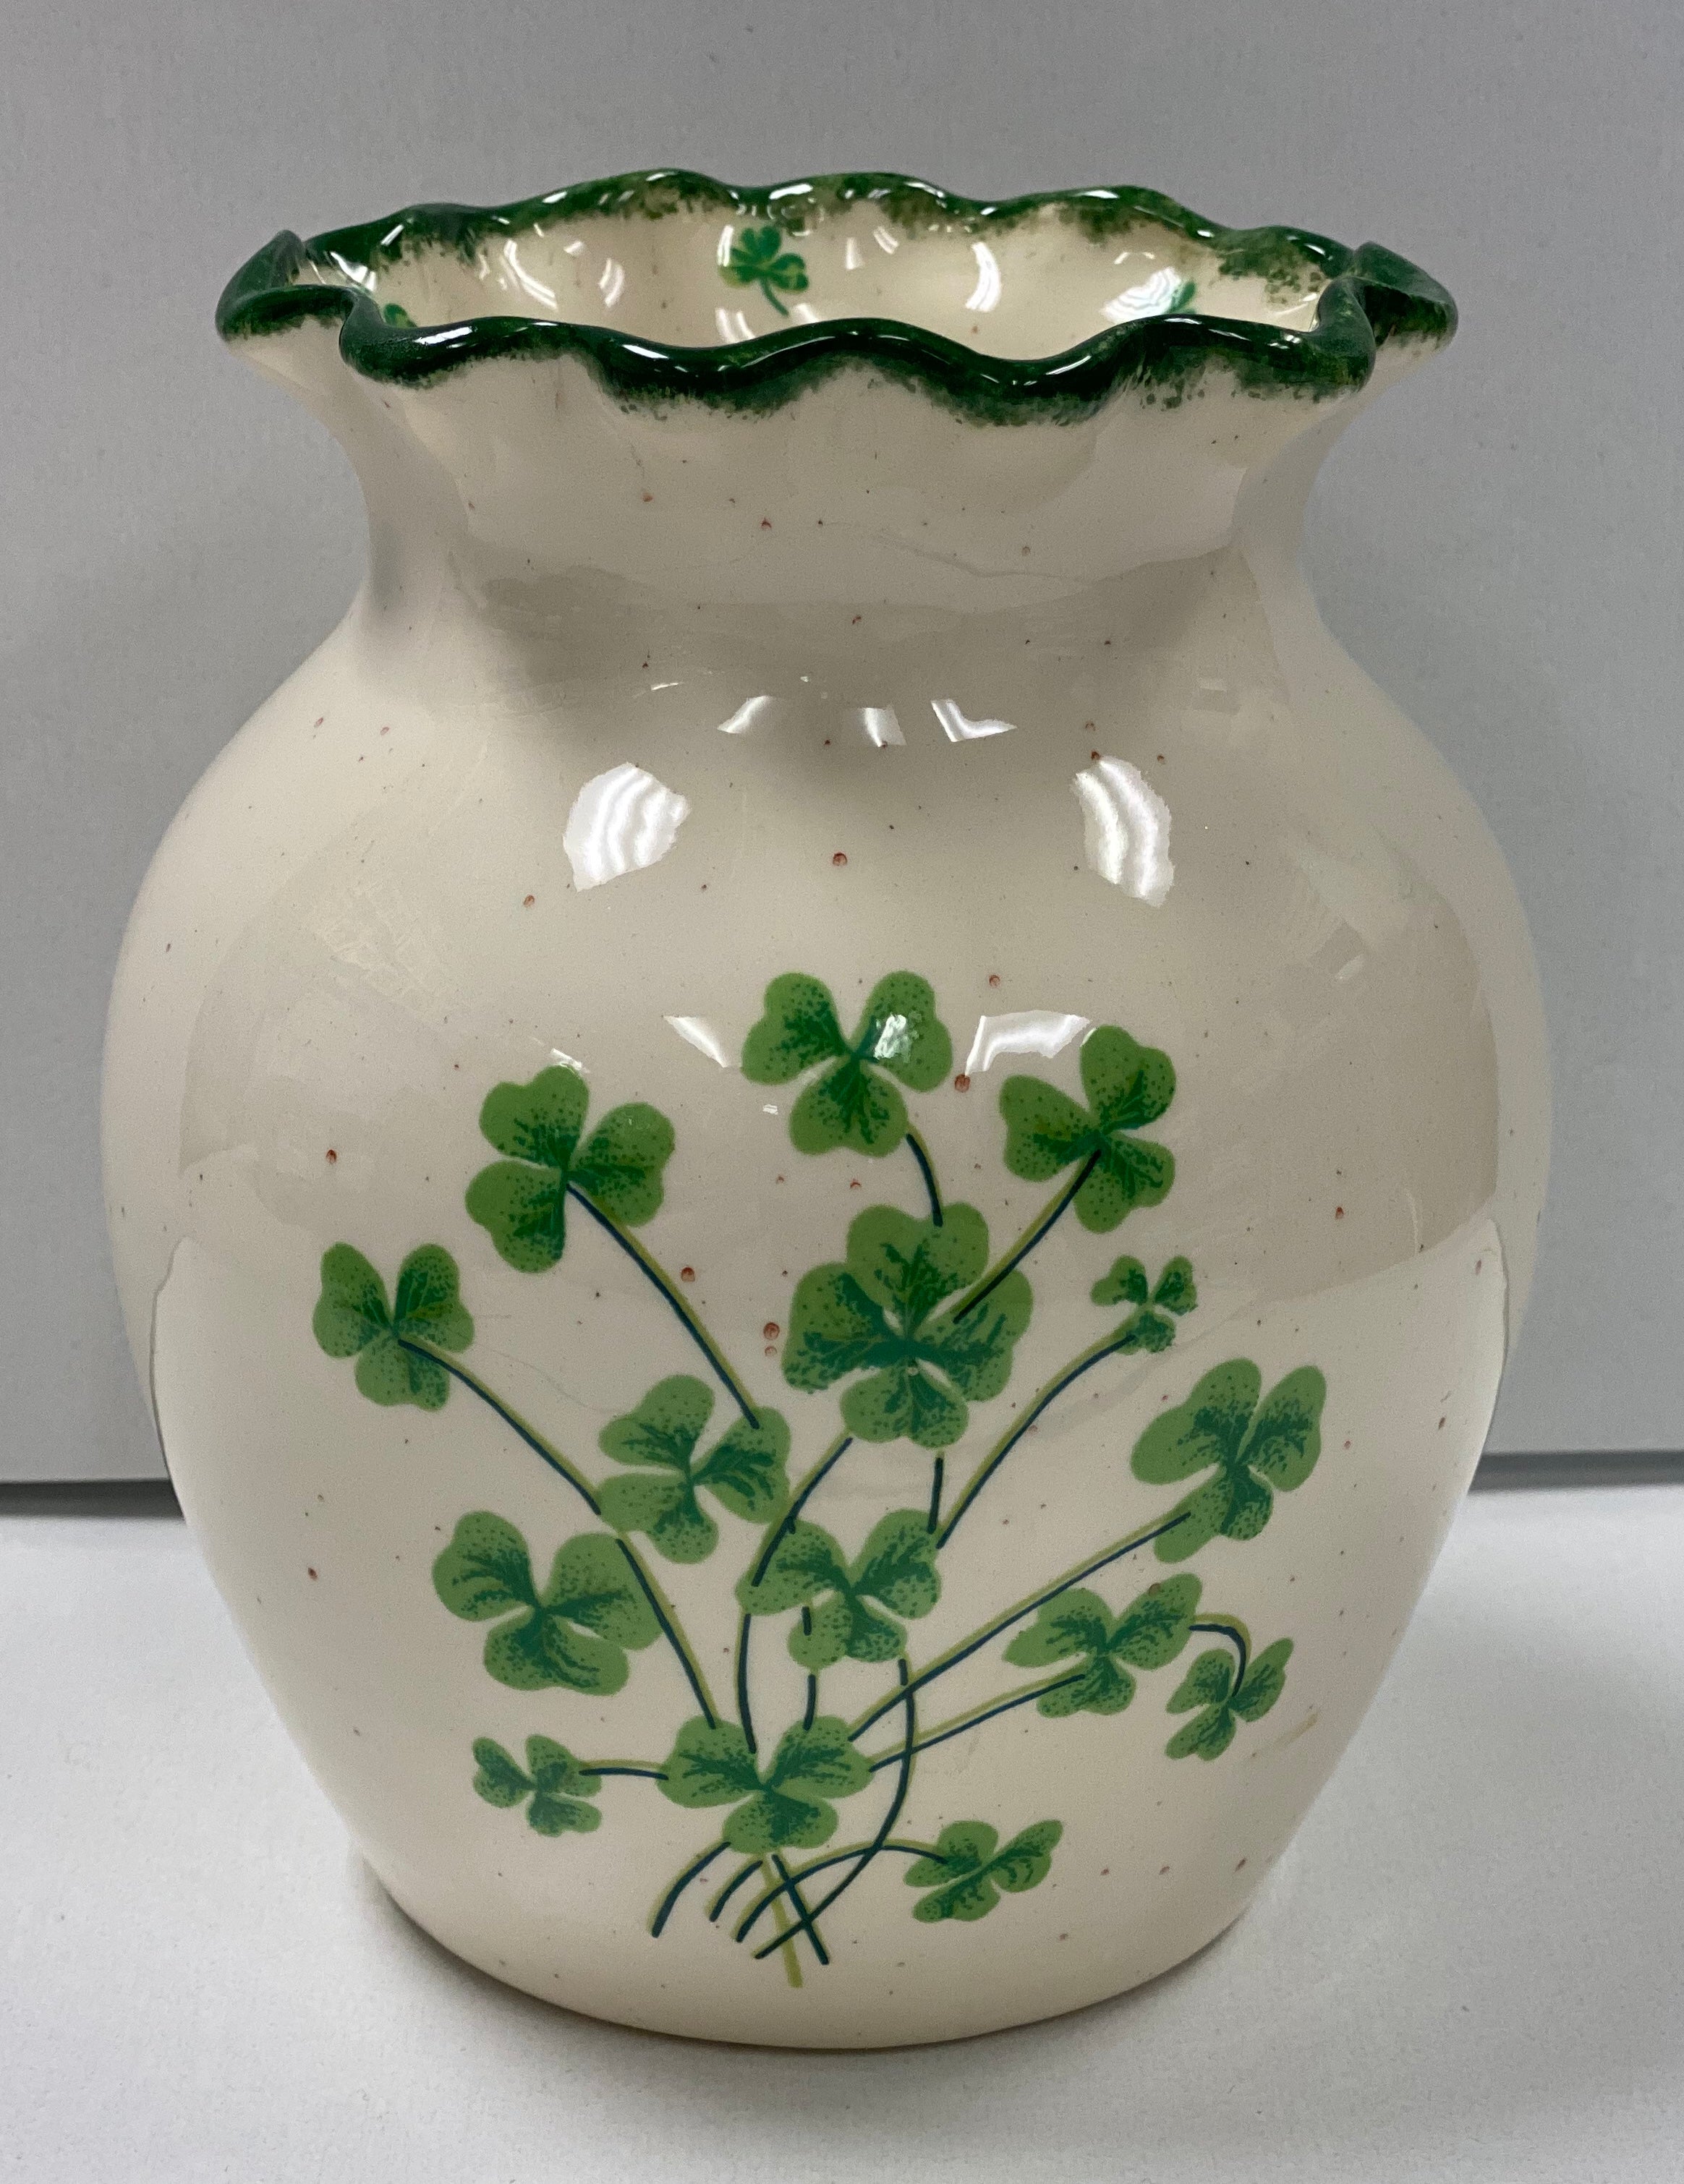 Shamrock vase ceramic